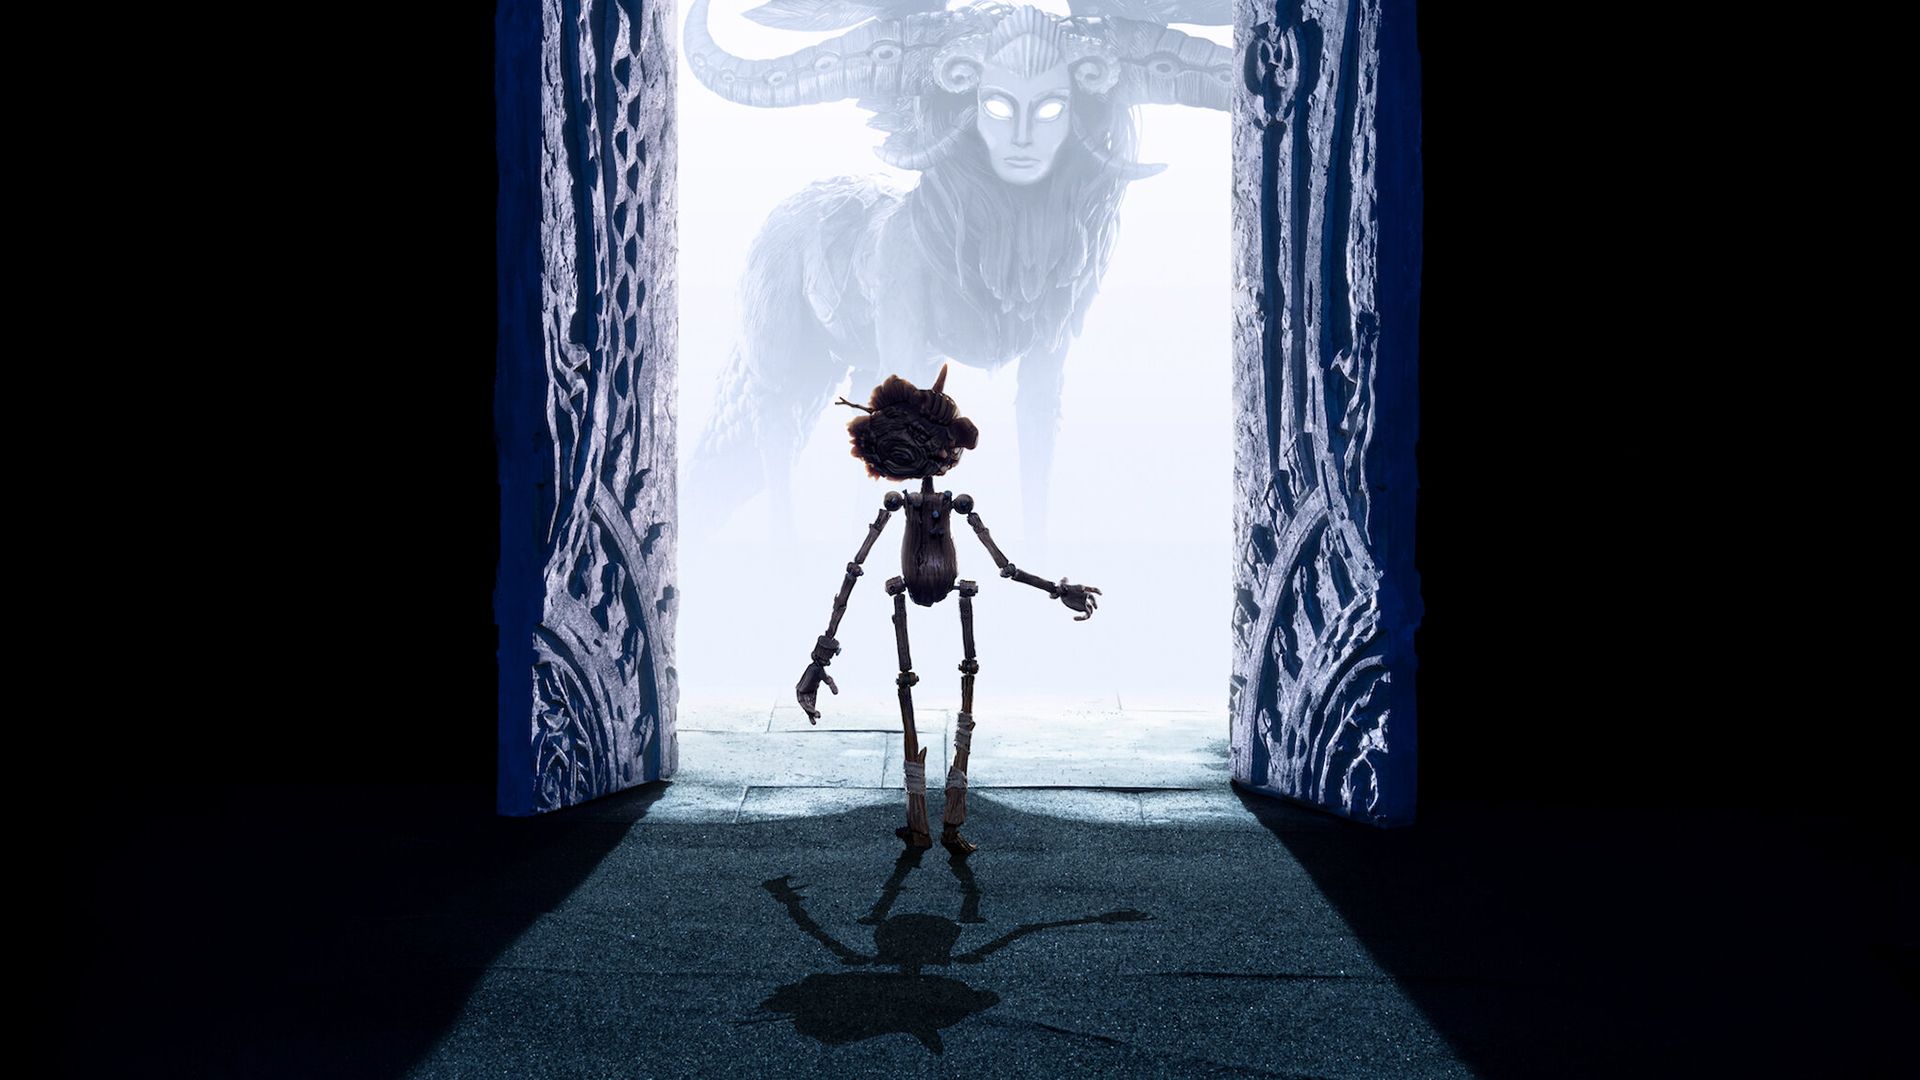 Guillermo del Toro's Pinocchio background